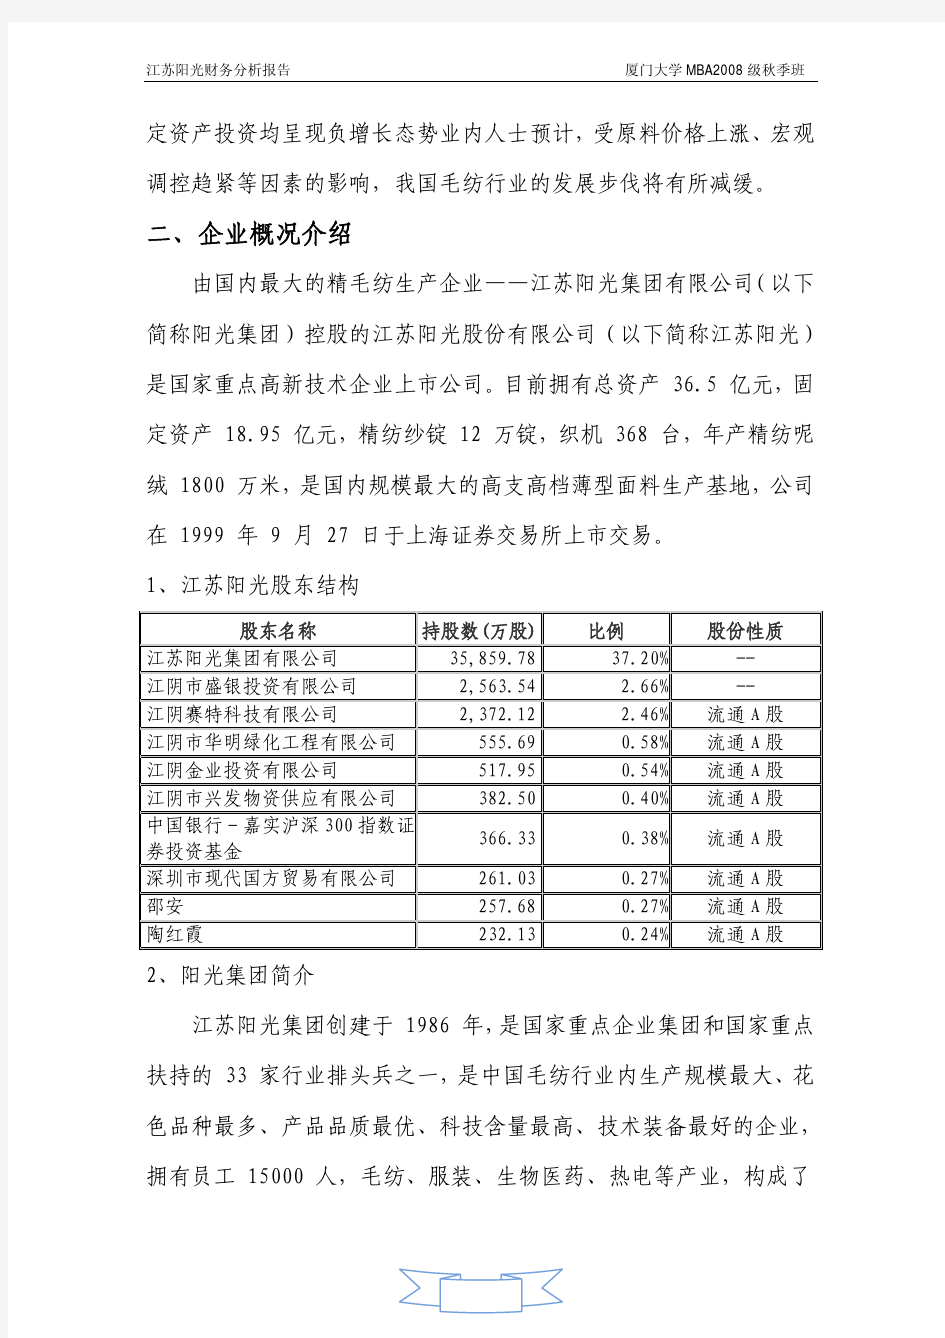 江苏阳光公司(纺织业)财务分析报告